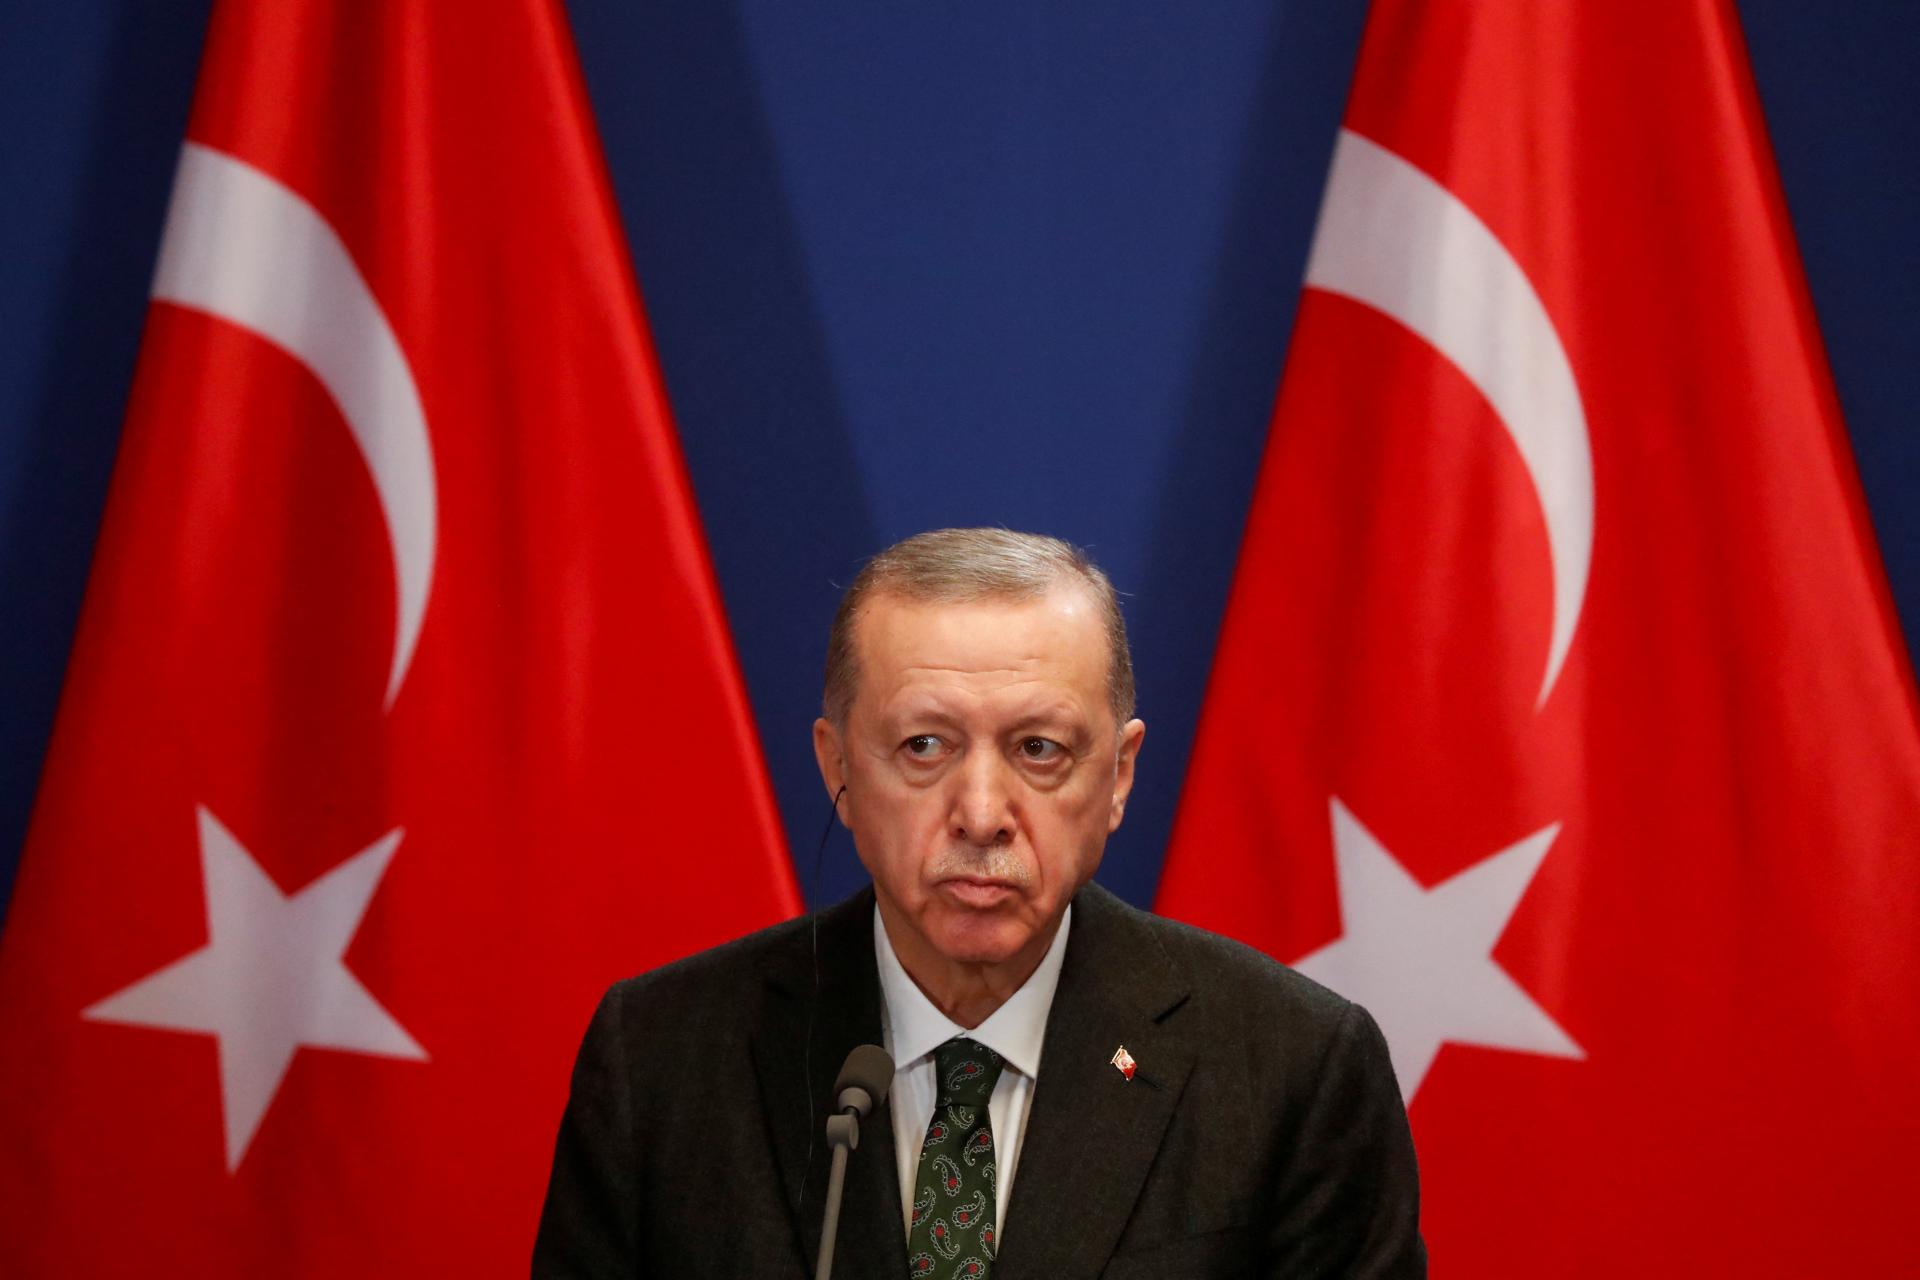 Prístupový proces Európskej únie s Ukrajinou uviazne ako v prípade Turecka, tvrdí Erdogan